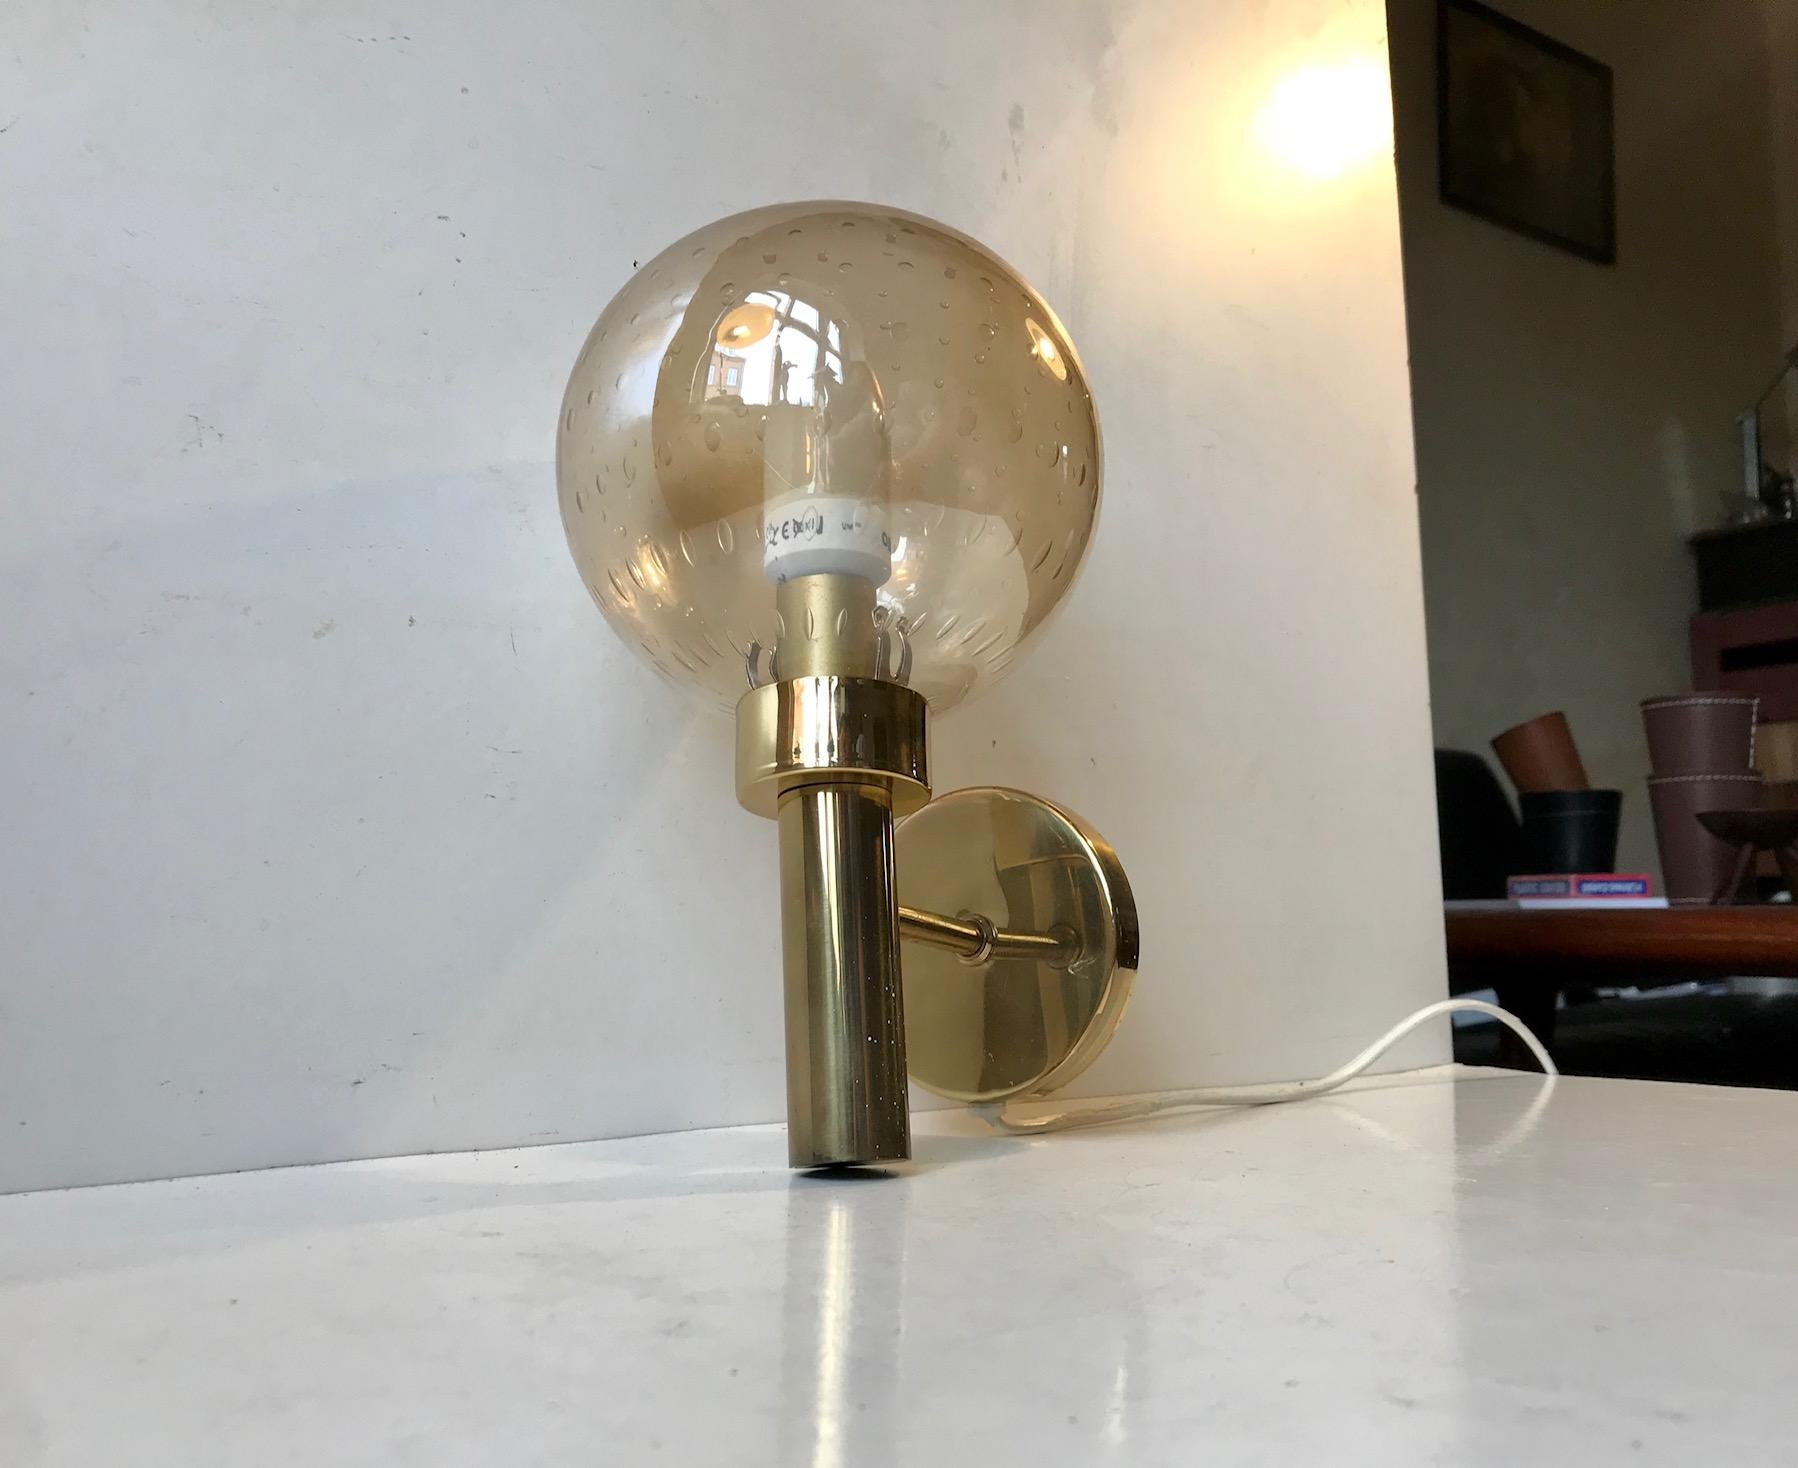 Loungelampe mit kugelförmigem honigfarbenem Glasschirm mit kontrollierten Blasen. Er wurde von Vitrika in Dänemark in einem an Hans-Agne Jakobsson erinnernden Stil hergestellt und entworfen. Schöner Jahrgang und funktionstüchtig mit einer leichten